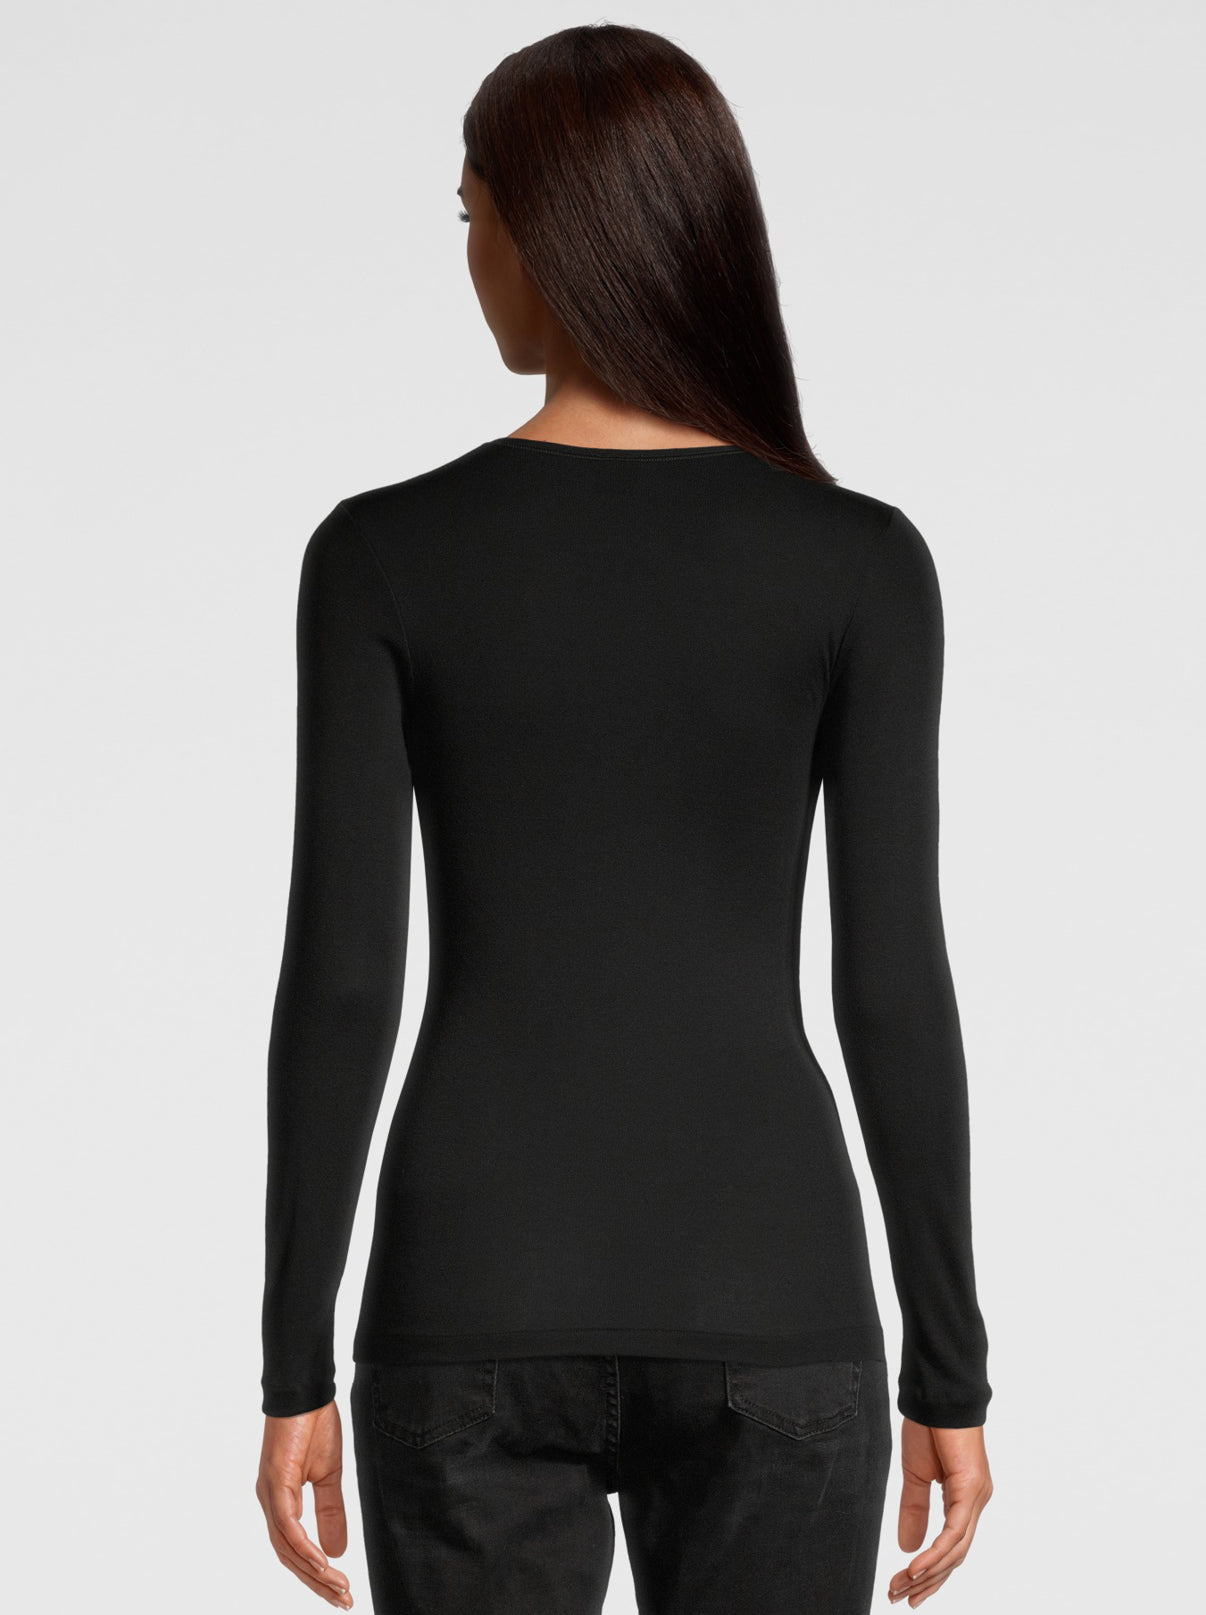 Back Woman Black Cotton Shirt